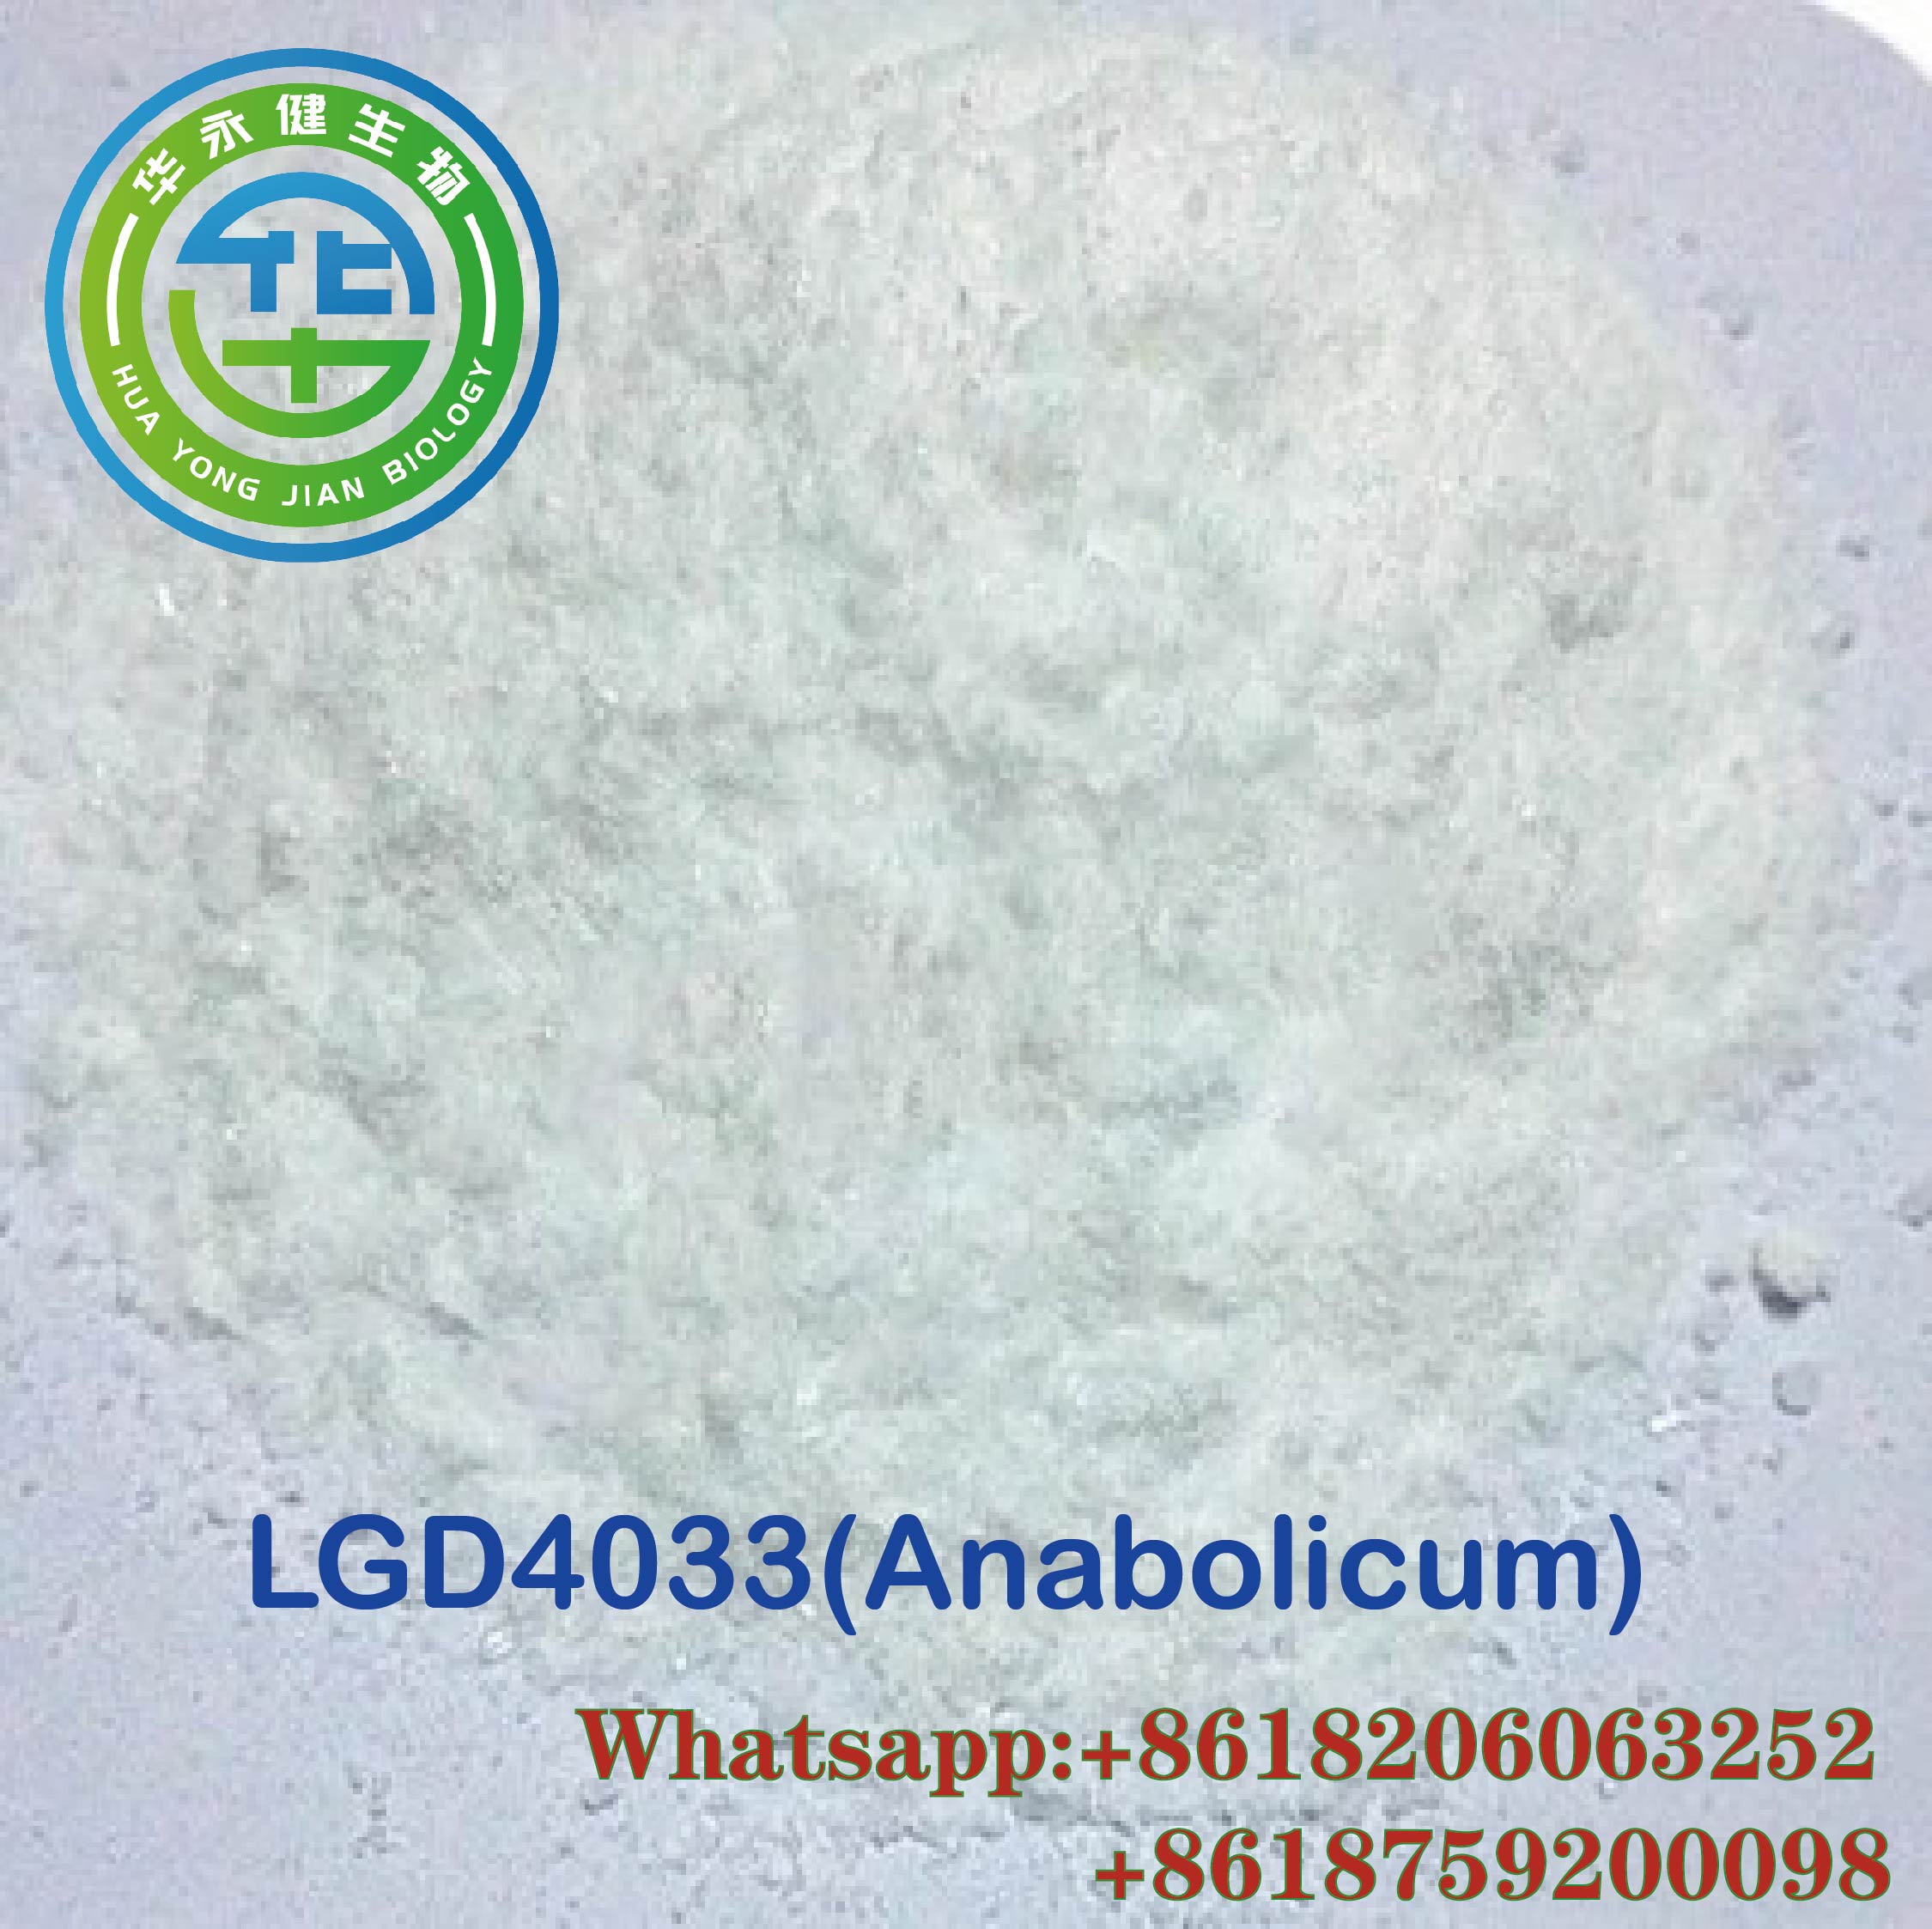 China Supply Oral SARM LGD-4033 Ligandrol for Bodybuilding Strength Gaining CAS 1165910-22-4